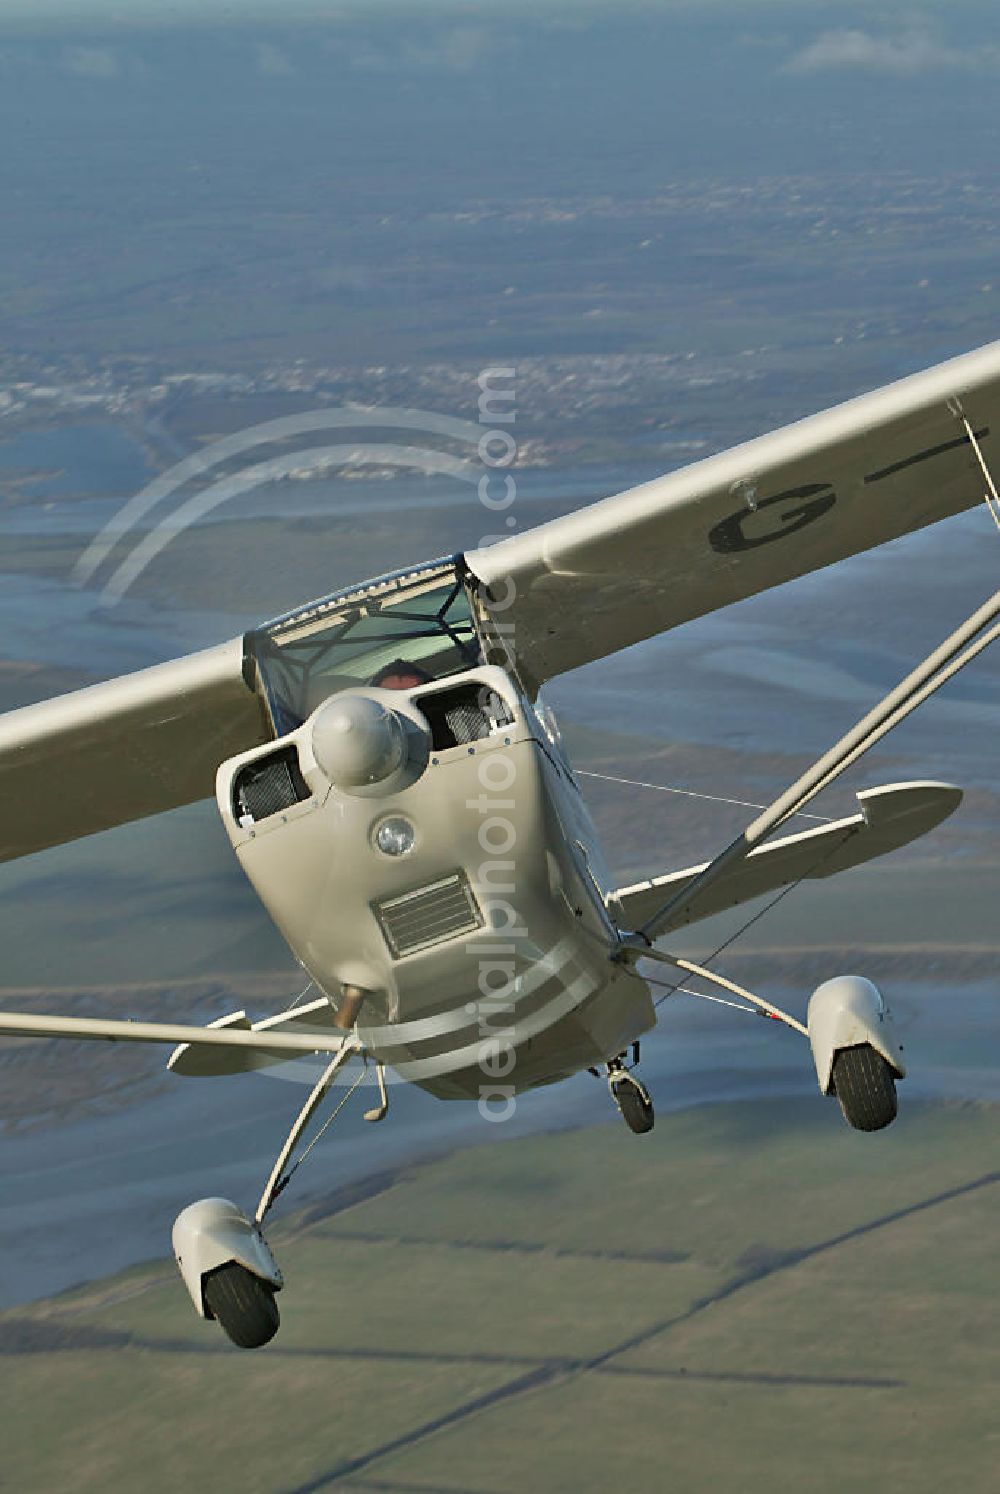 Aerial photograph Heybridge - Flugzeug / Kleinflugzeug vom Typ American Champion Aurora über der Insel Osea Island in Essex / England. Die Insel befindet sich in einem Ästuarim / Meeresarm der Nordsee bzw. dem Fluß Blackwater nahe der Ortschaft Heeybridge. Small aircraft over the Osea Island in Essex / England.